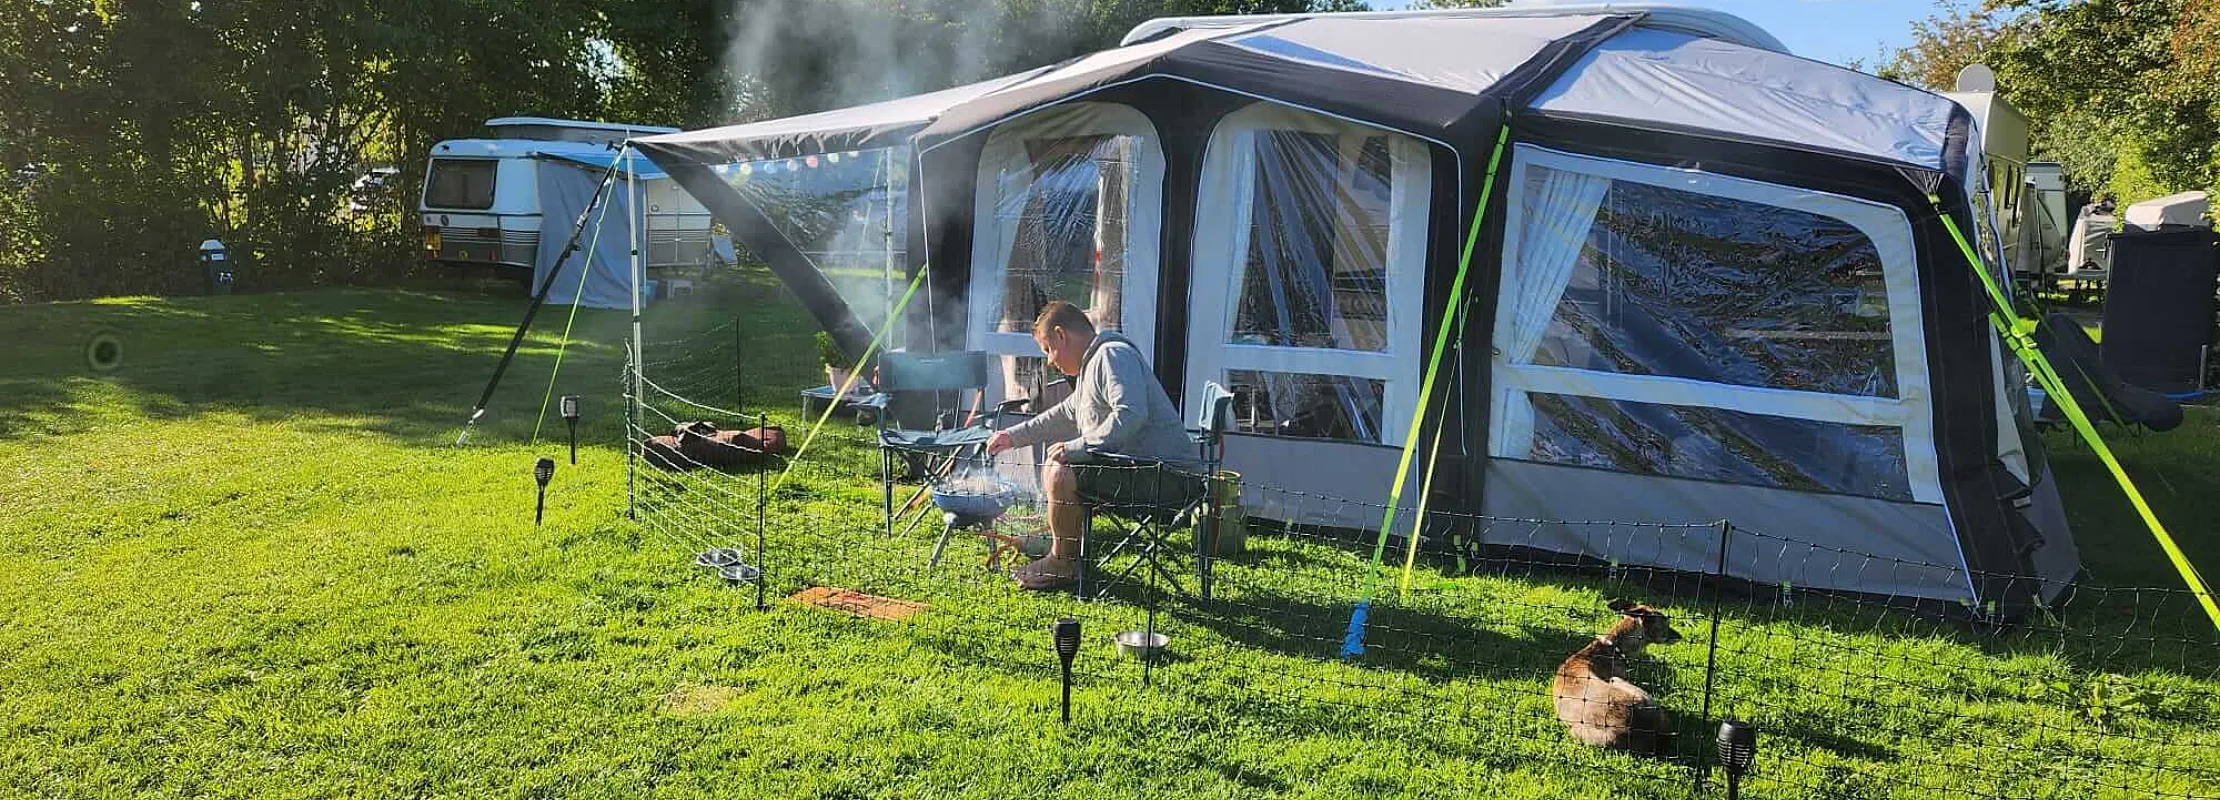 Barbecueen op de camping